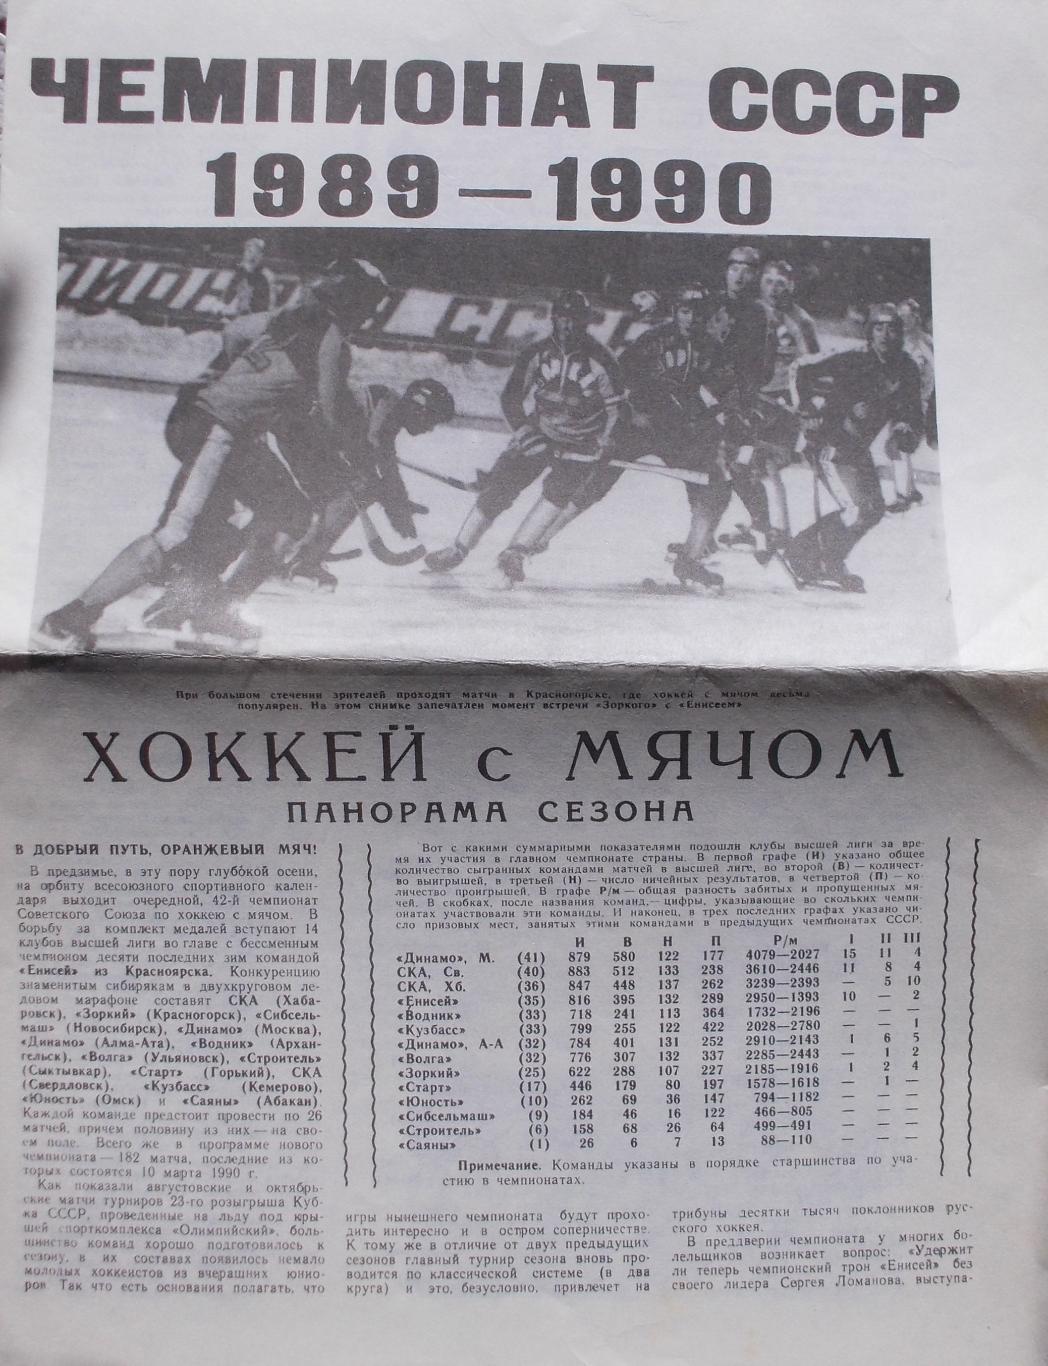 Хоккей с мячом, чемпионат СССР 1989-1990. Панорама сезона.